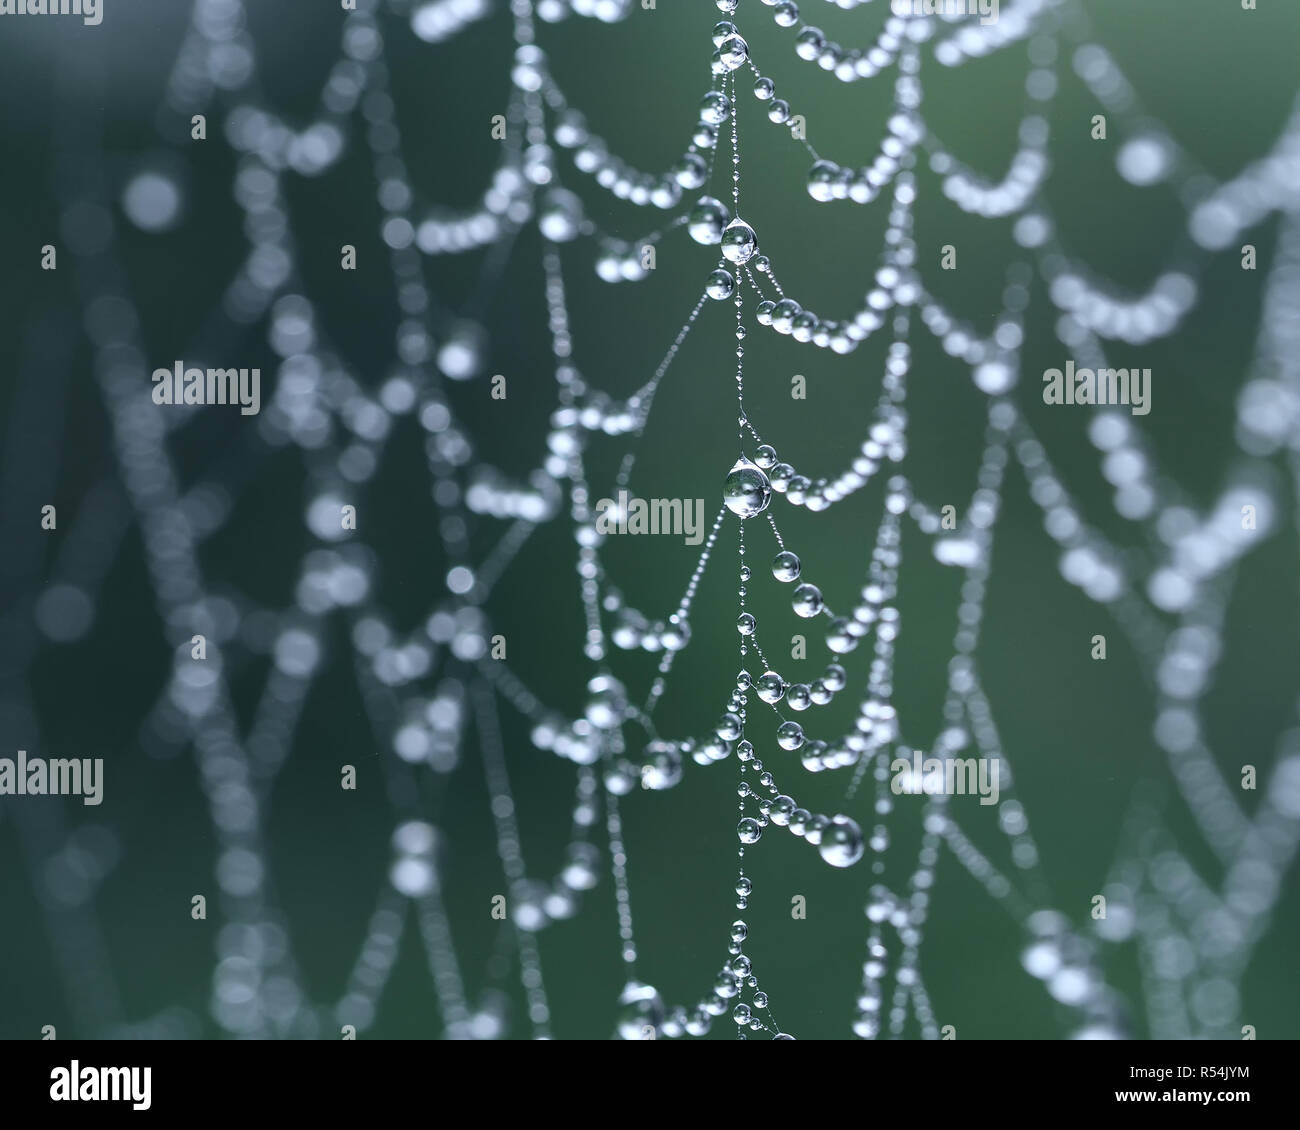 Les gouttelettes de rosée sur les araignées web avec une faible profondeur de champ. Tipperary, Irlande Banque D'Images